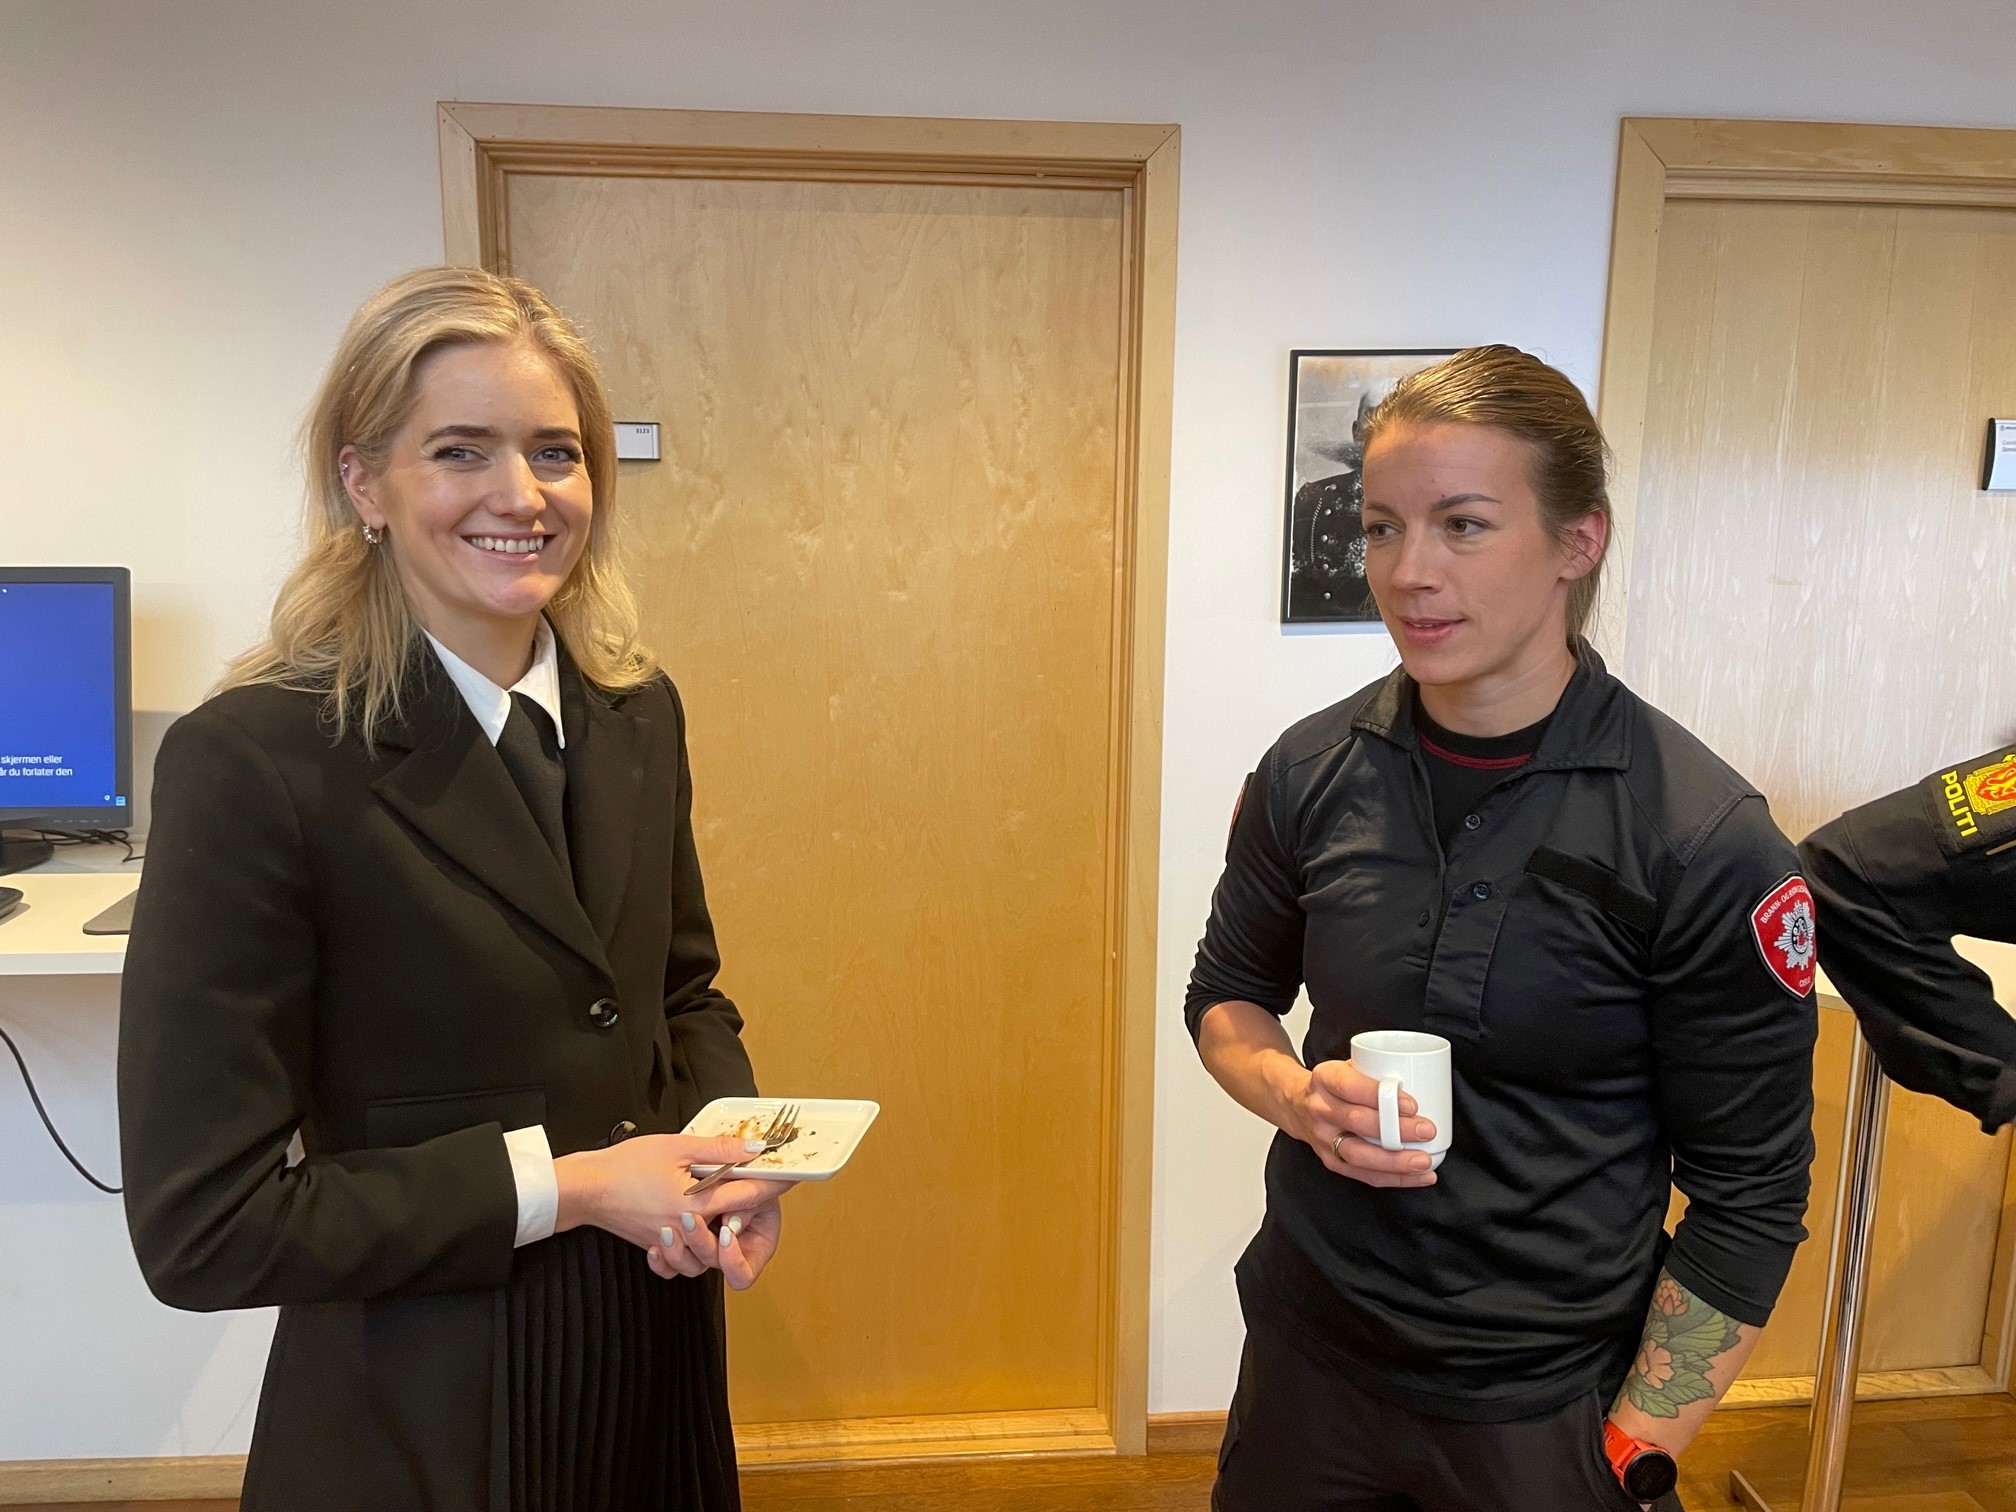 Bildet viser Emilie Enger Mehl, Norges justisminister, sammen med en ung kvinne i brannmann-uniform. Begge ser i kameraet og smiler.